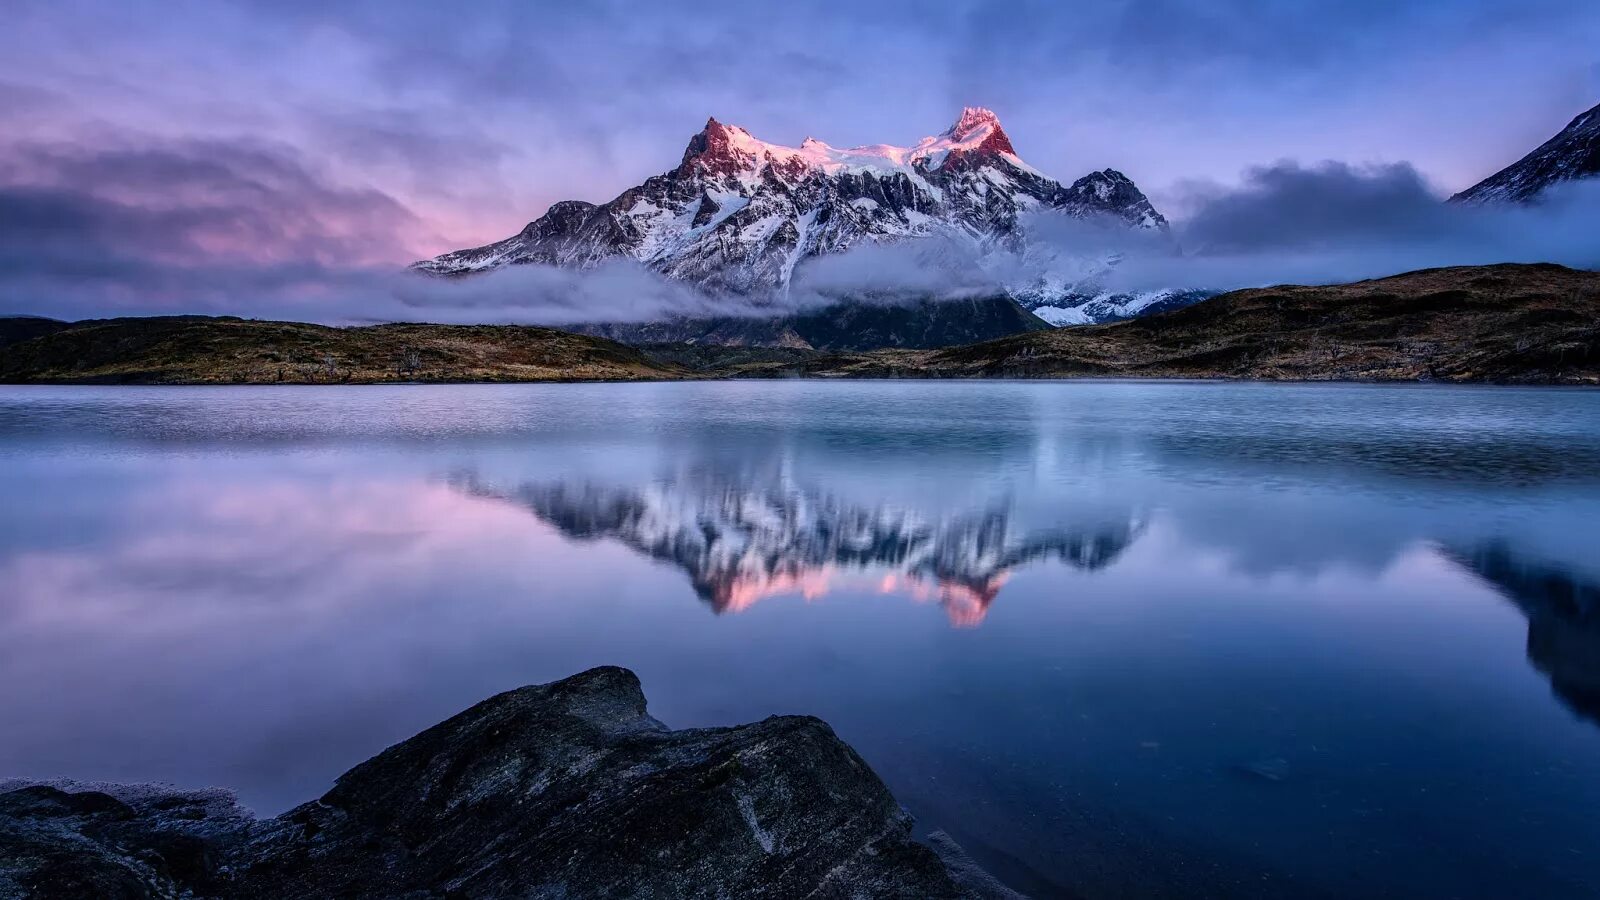 Фотографии размером 1024 2048 пикселей сохранили. Северная Патагония, Чили. Южная Патагония Чили. Национальный парк Торрес-дель-Пайне. Чили горы Патагония.